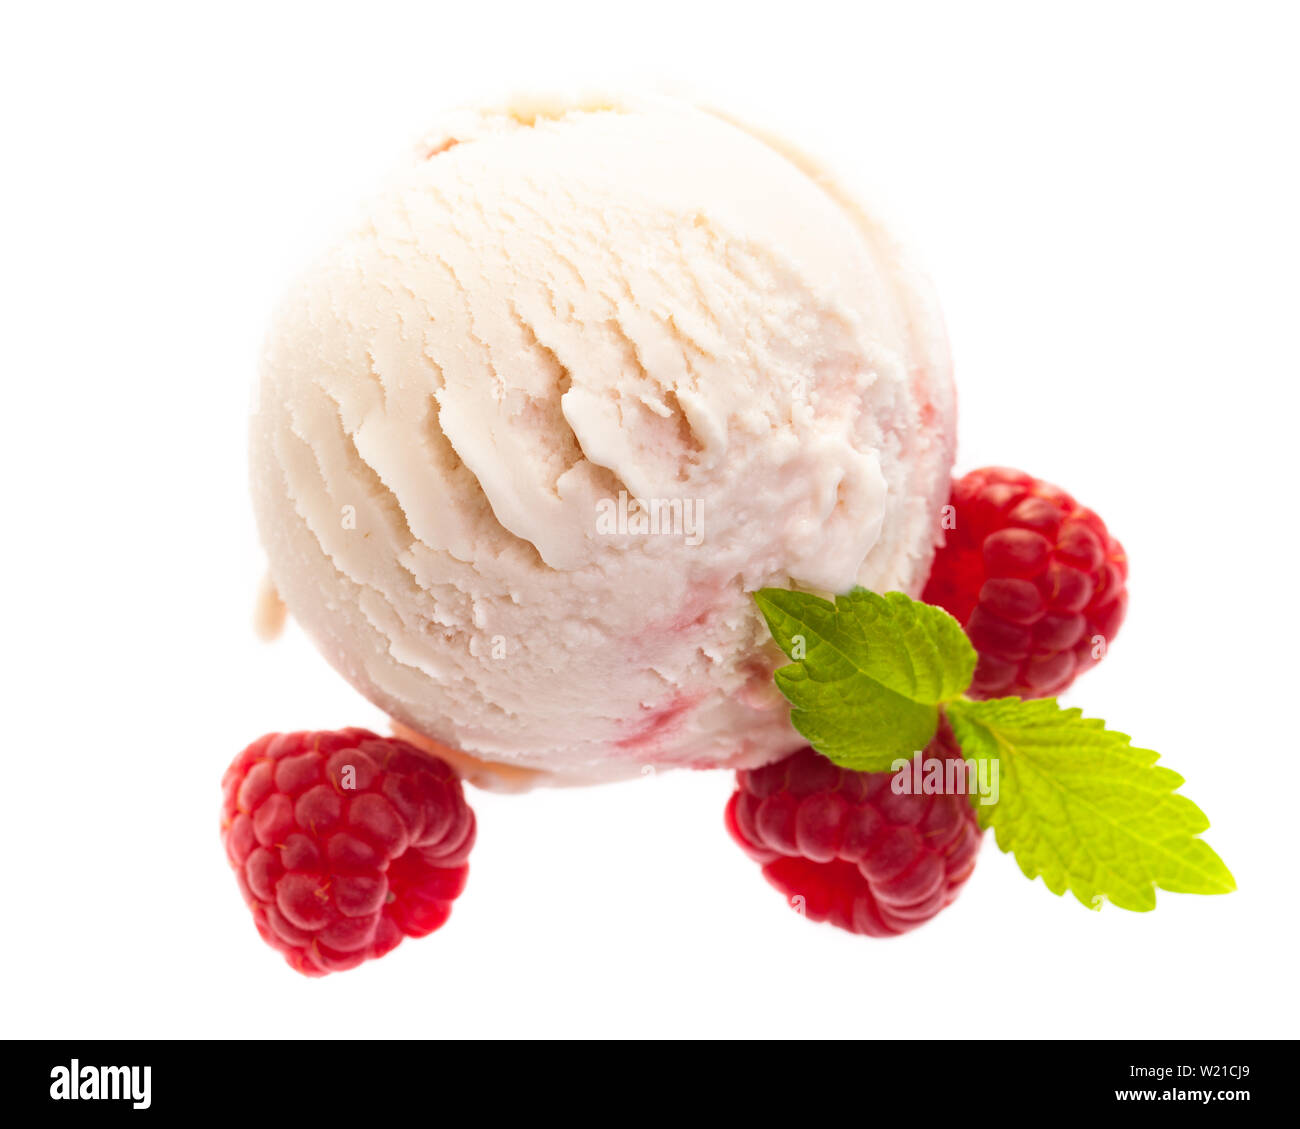 Un singolo - yogurt gelato al lampone scoop con lamponi dall'alto isolato su sfondo bianco Foto Stock